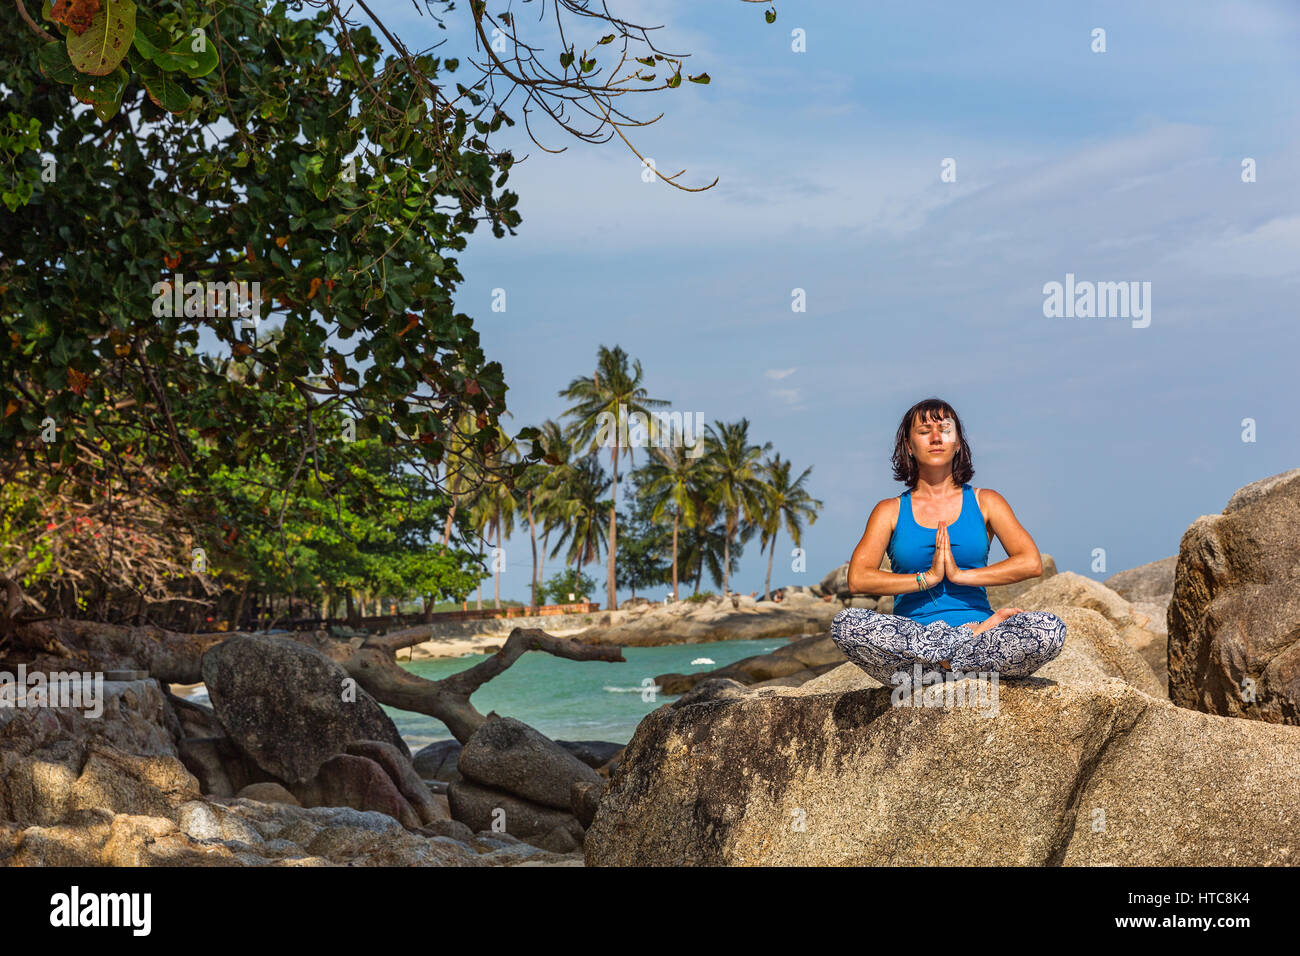 Mujer hacer yoga al aire libre. Mujer ejercitando yoga en el fondo de la  naturaleza, seleccione el enfoque: fotografía de stock © Freebird7977  #137966558